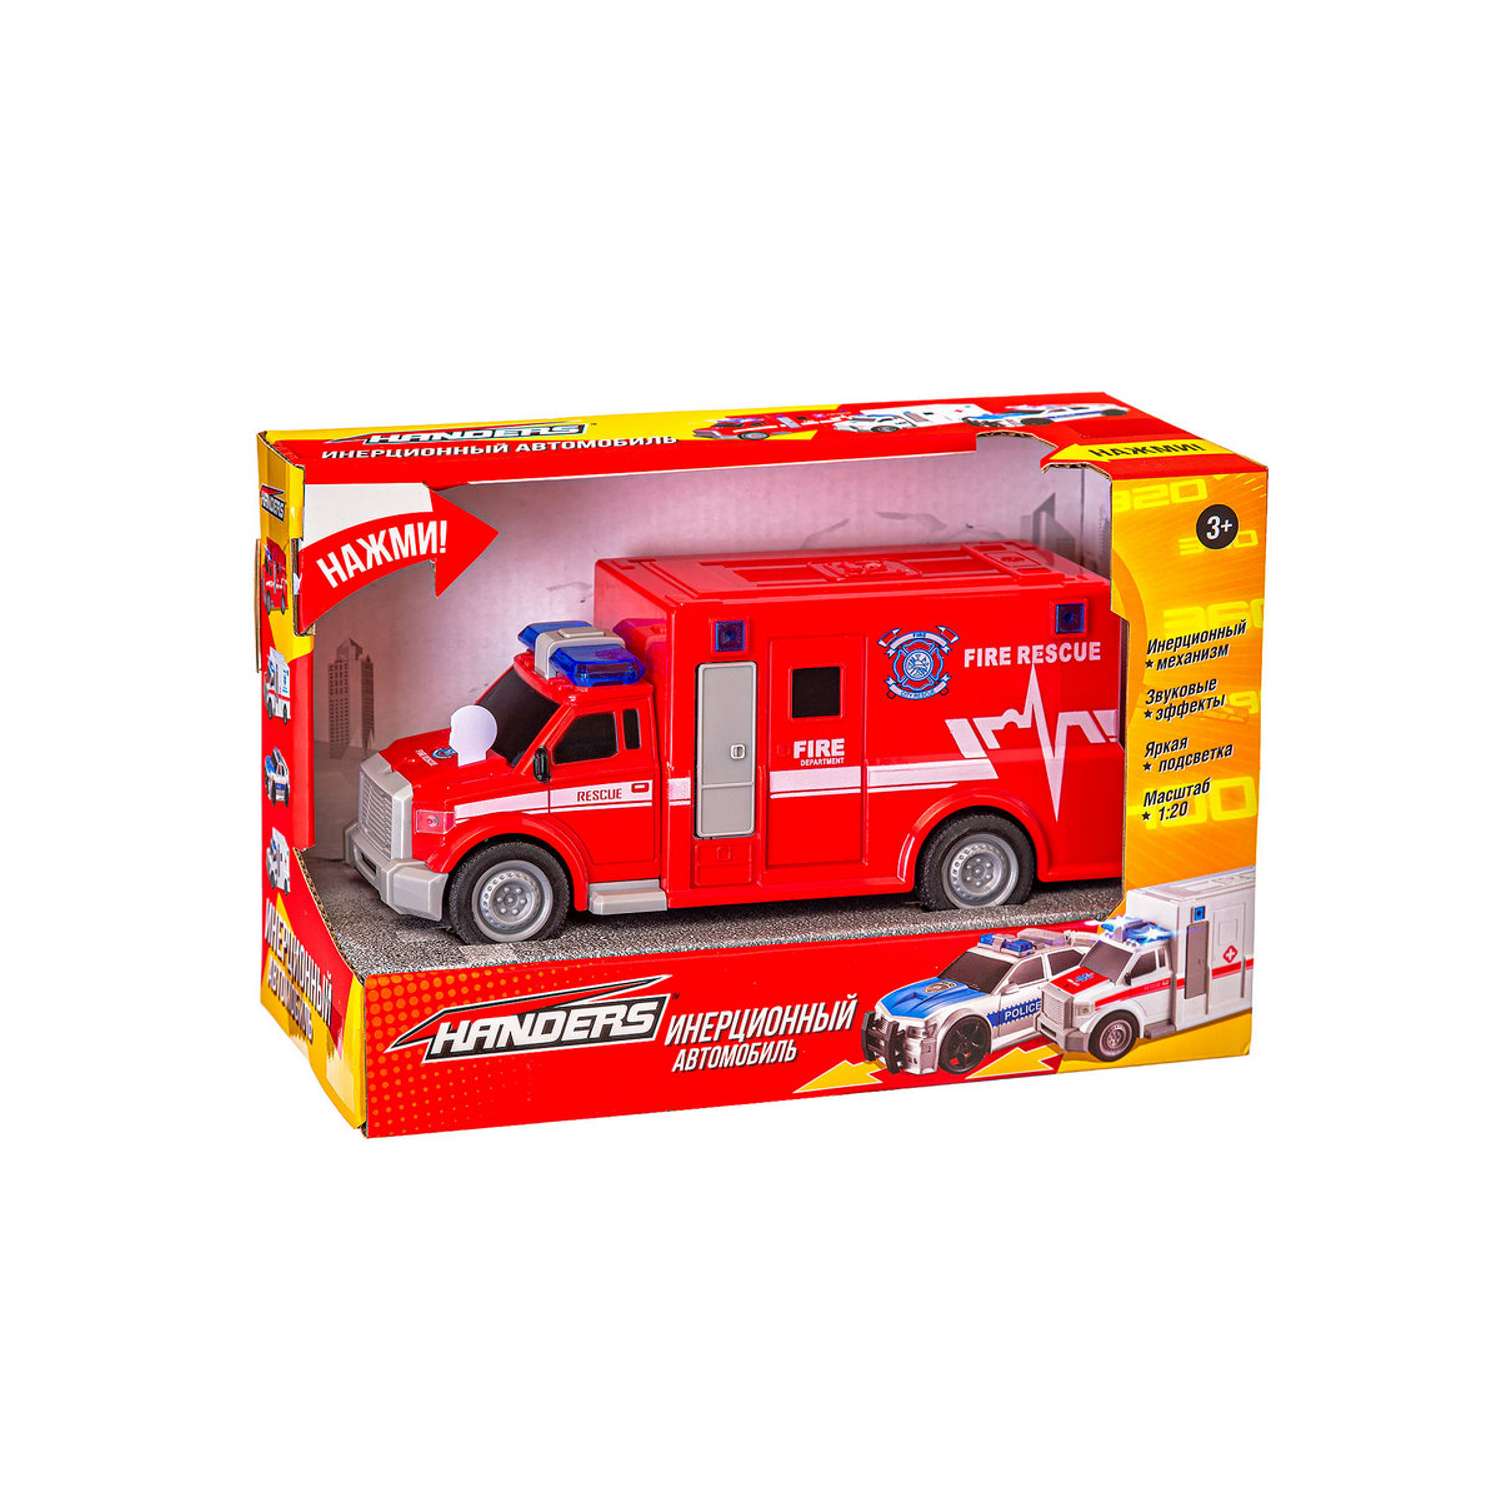 Инерционная игрушка Handers Пожарный фургон 19 см 1:20 свет звук HAC1608-145 - фото 4